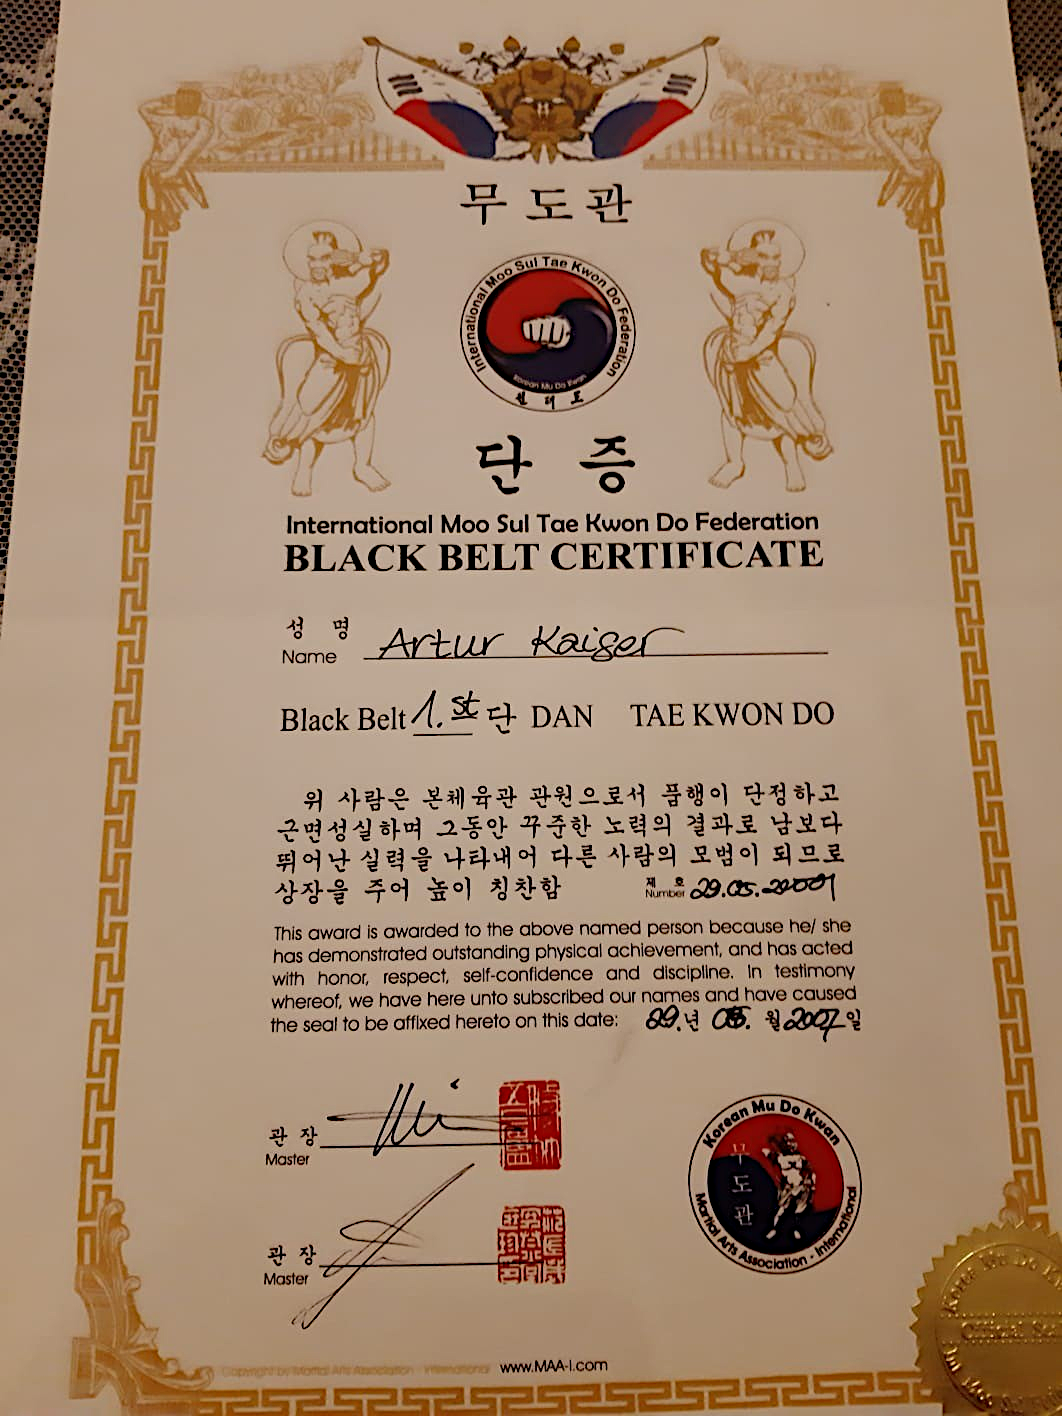 Bild vom Black Belt Certificate der International Moo Sul Tae Kwon Do Federation im 1. Darn für Artur Kaiser